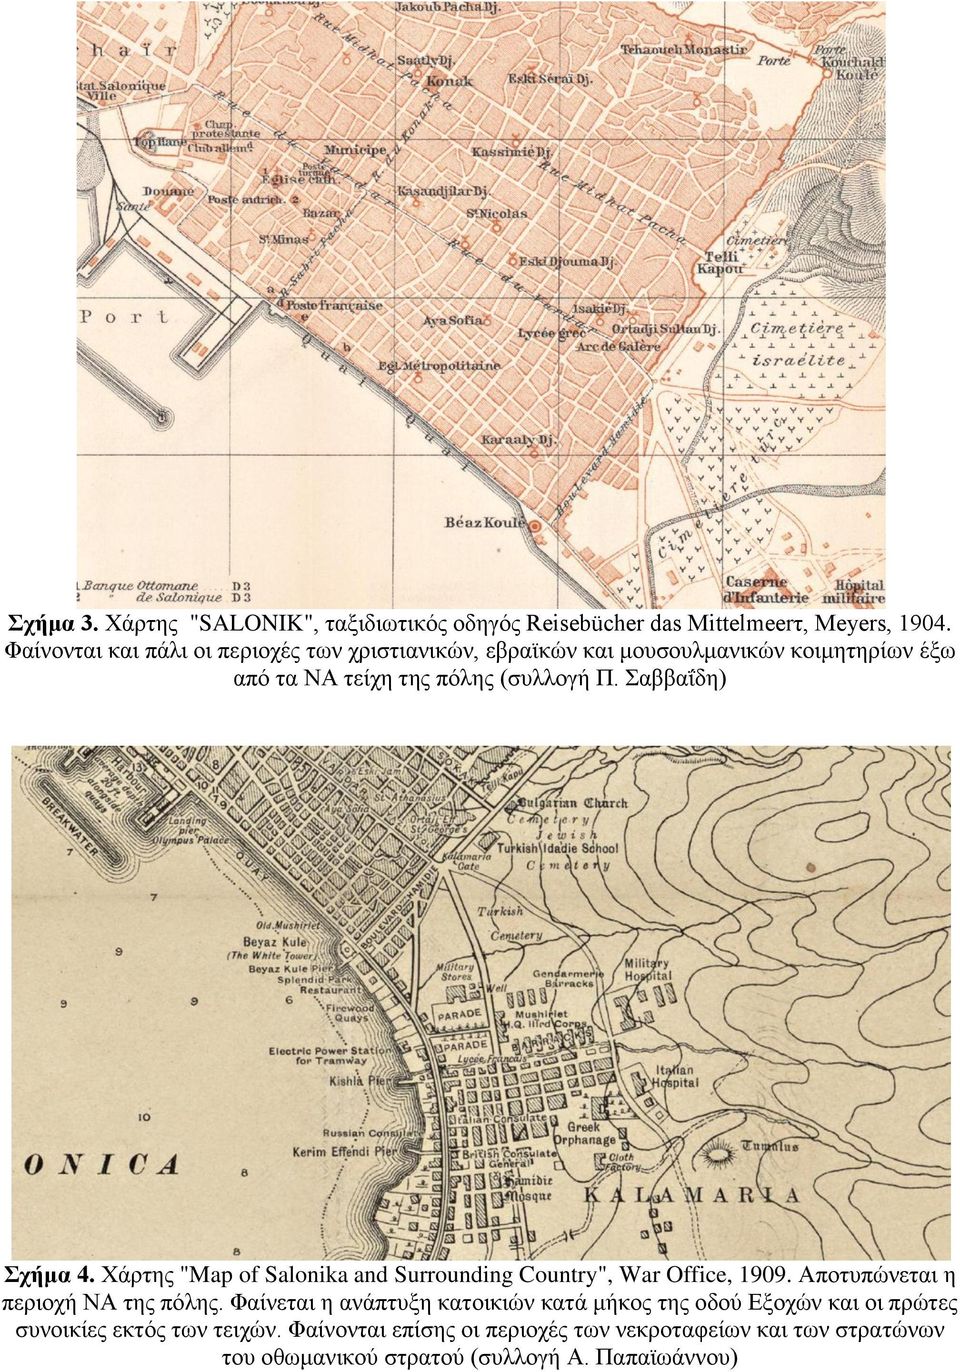 Σαββαΐδη) Σχήμα 4. Χάρτης "Map of Salonika and Surrounding Country", War Office, 1909. Αποτυπώνεται η περιοχή ΝΑ της πόλης.